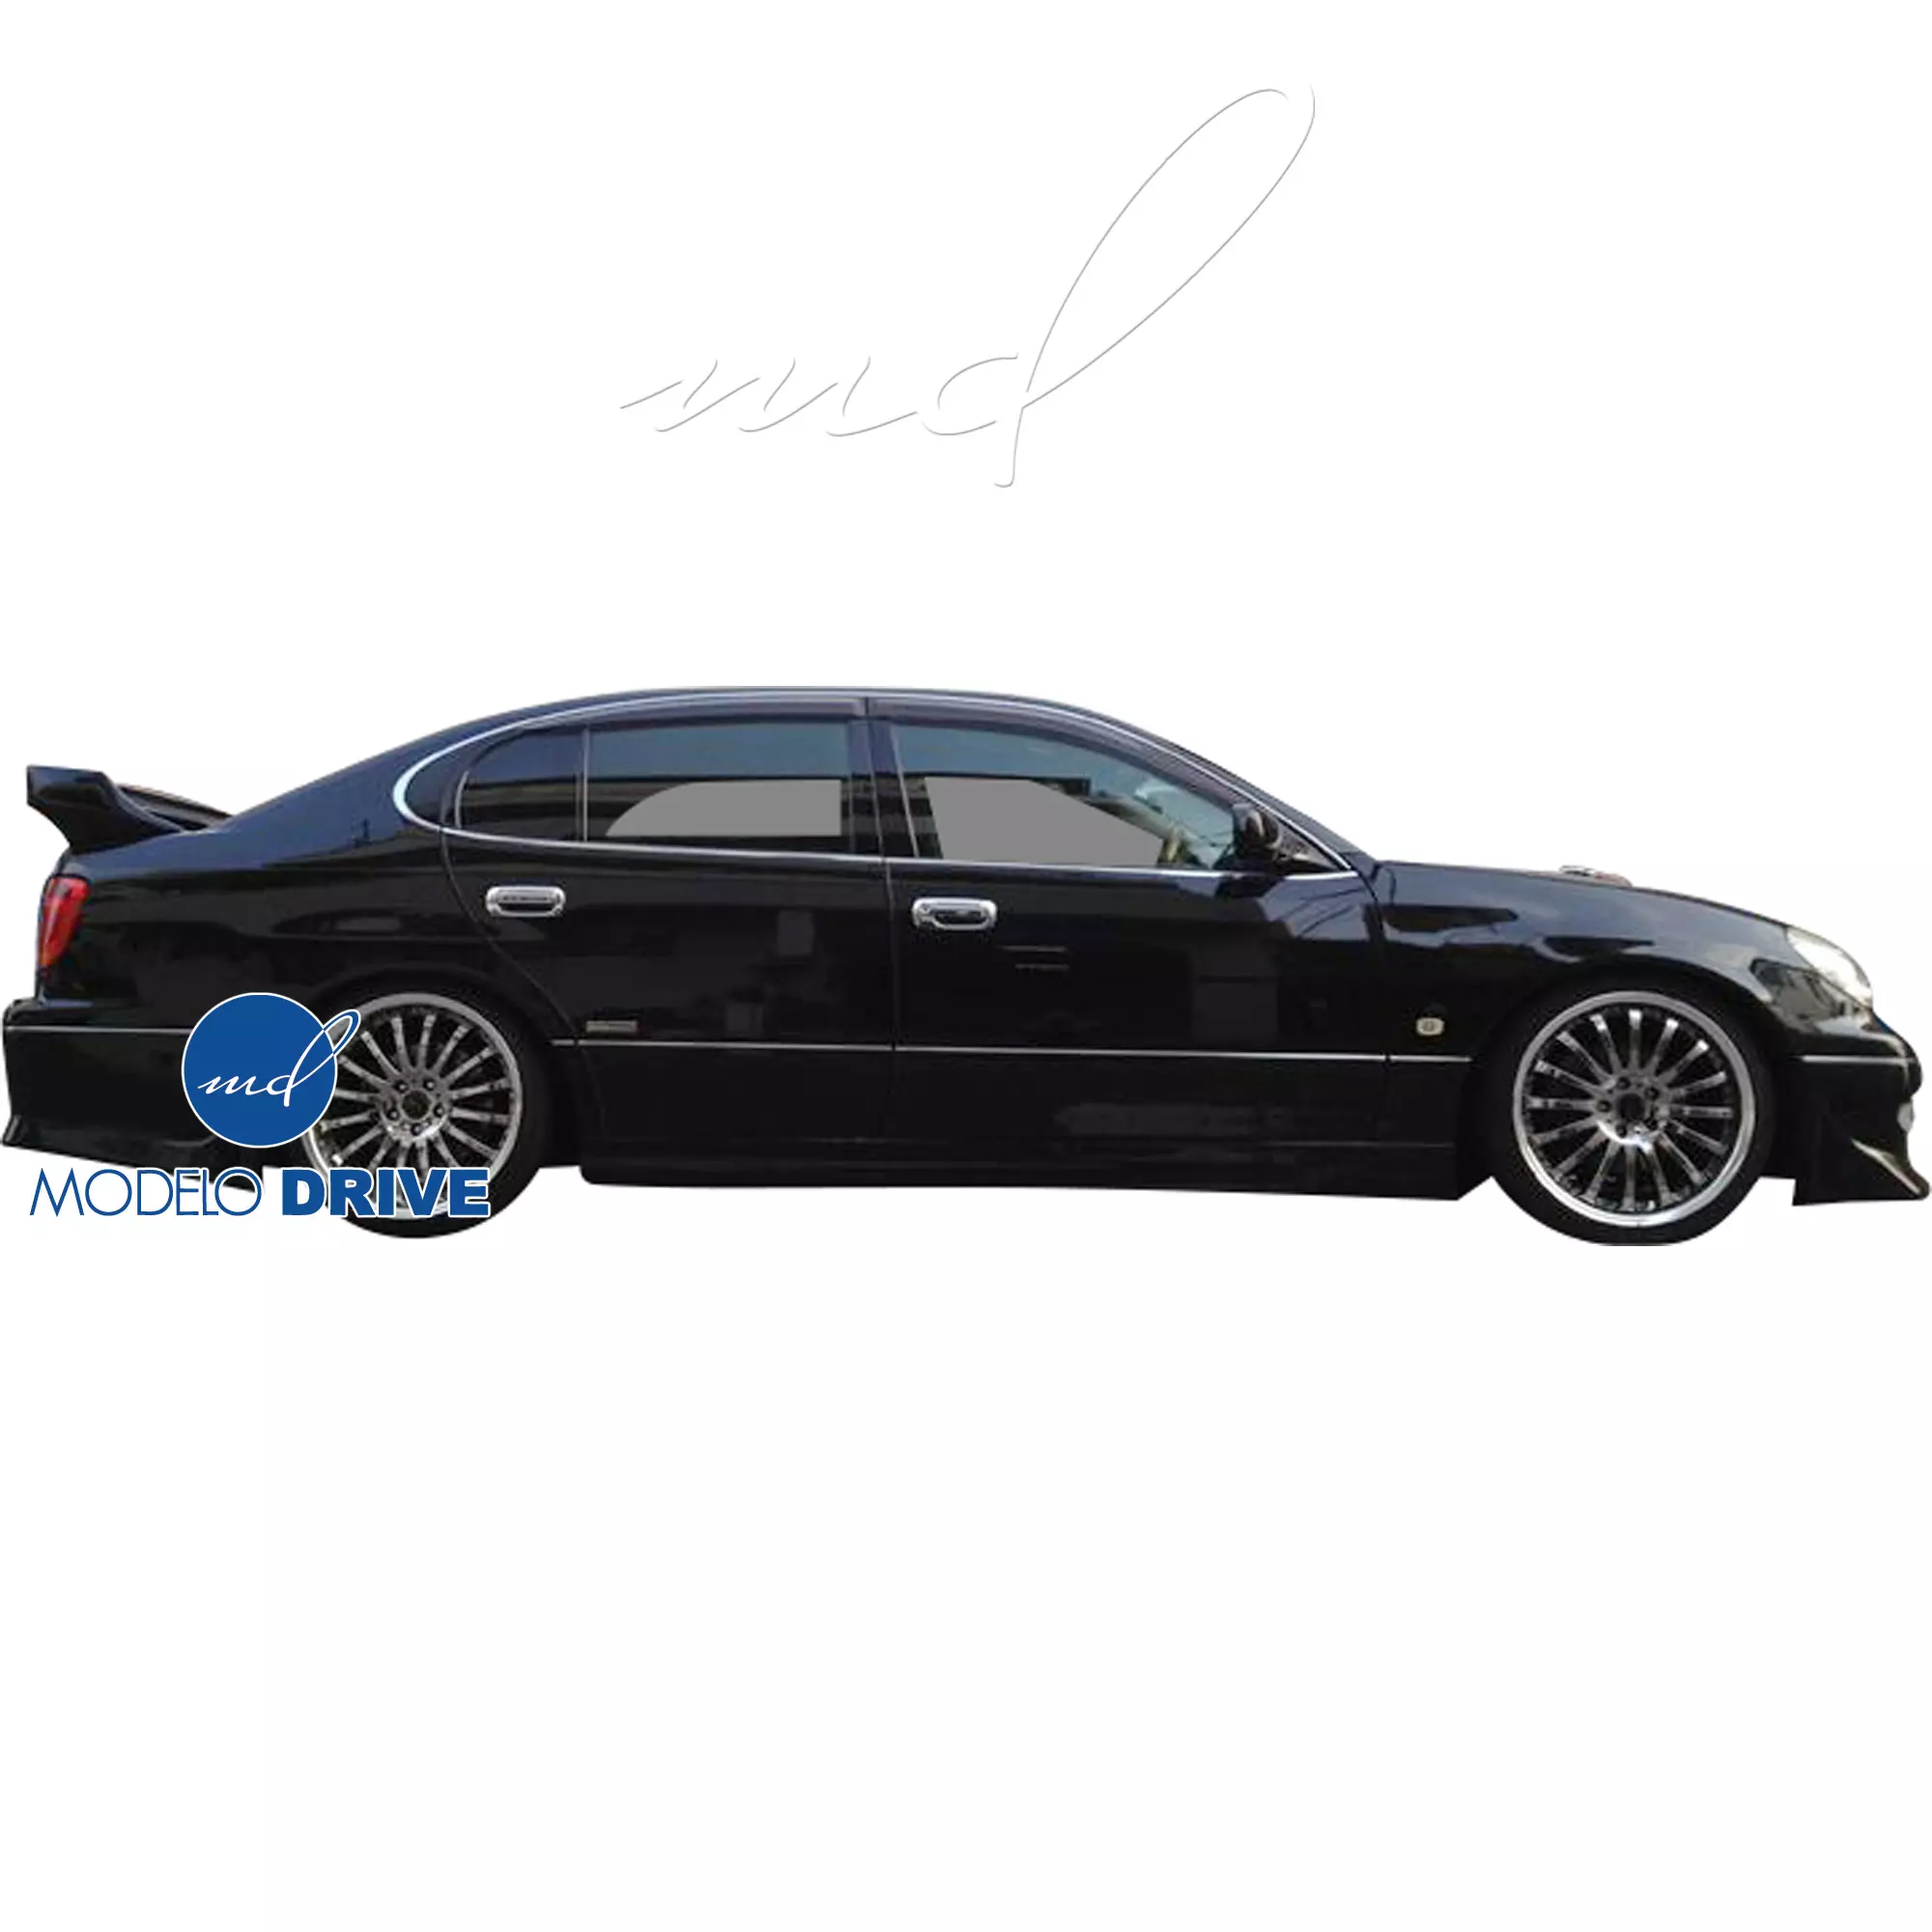 ModeloDrive FRP KAZA Body Kit 4pc > Lexus GS Series GS400 GS300 1998-2005 - Image 31